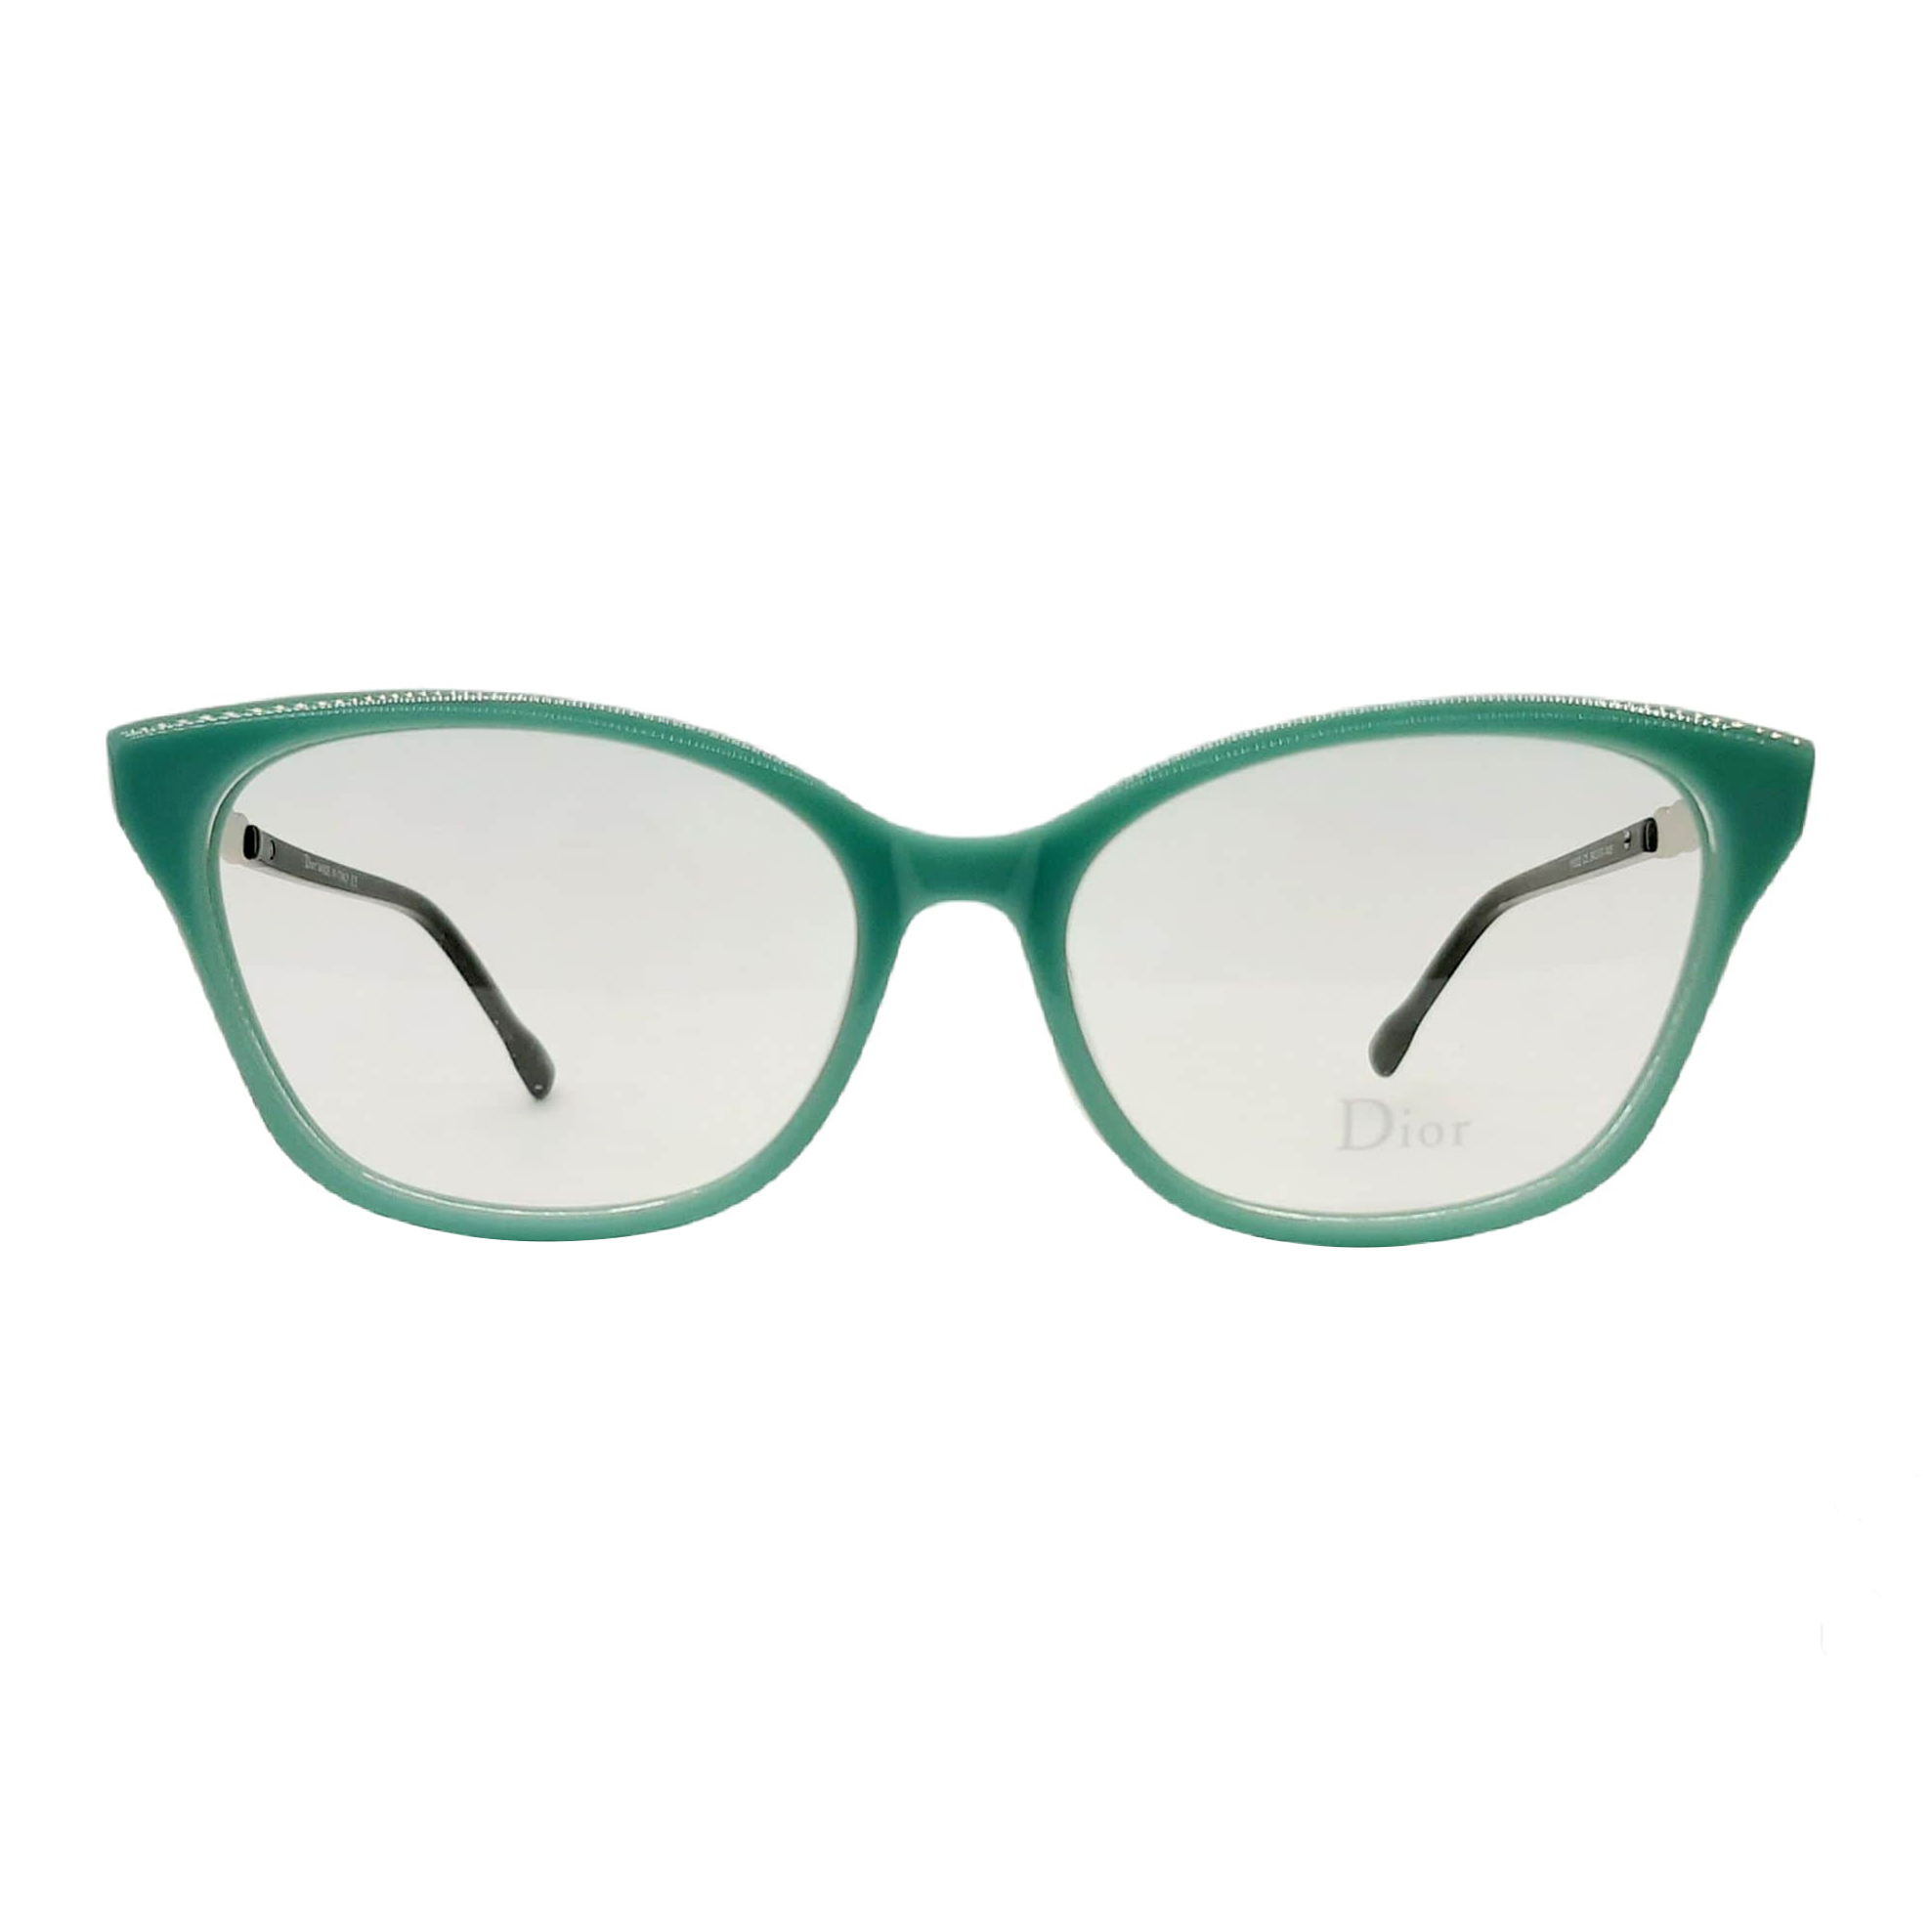 فریم عینک طبی زنانه دیور مدل 11022c5